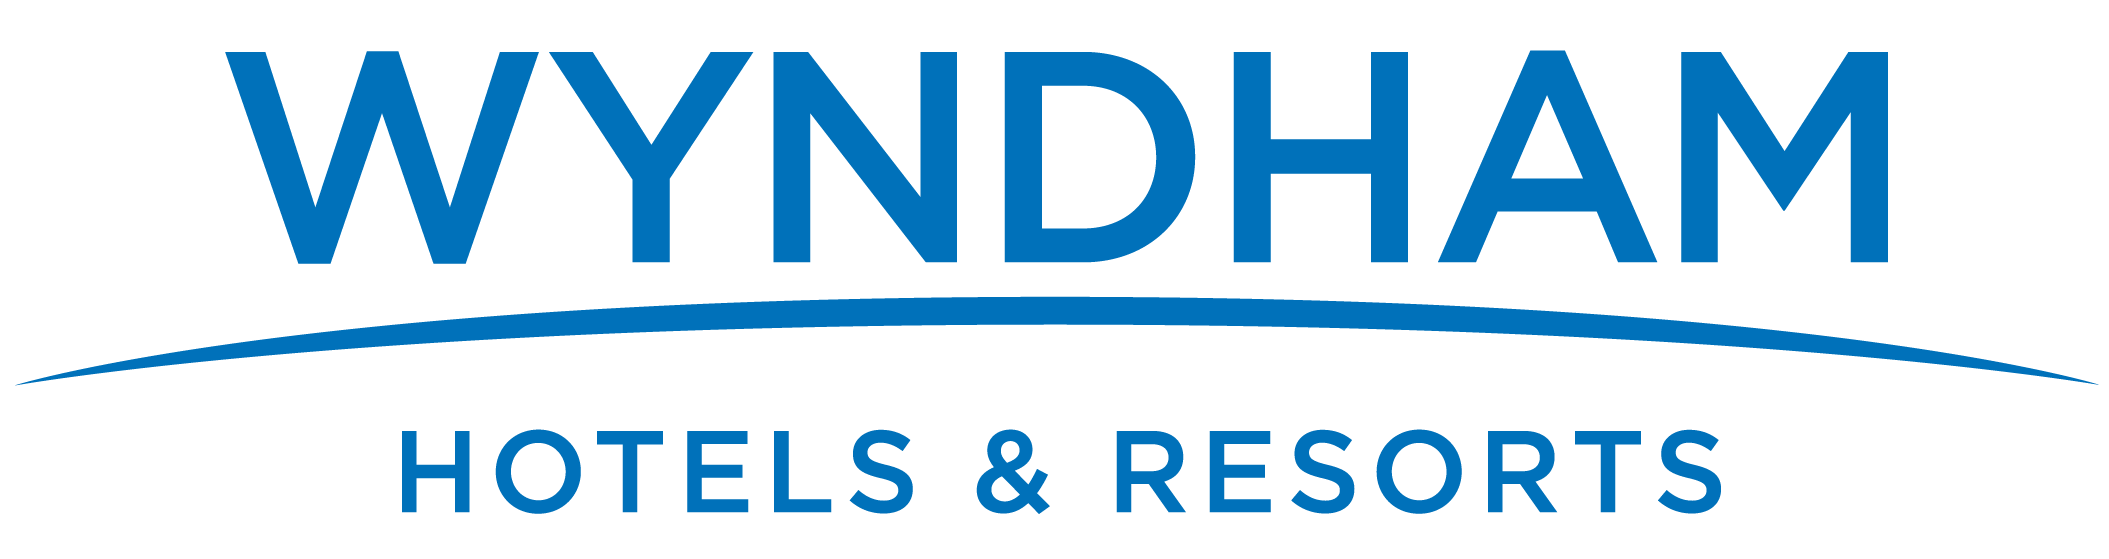 Wyndham Hotels logo